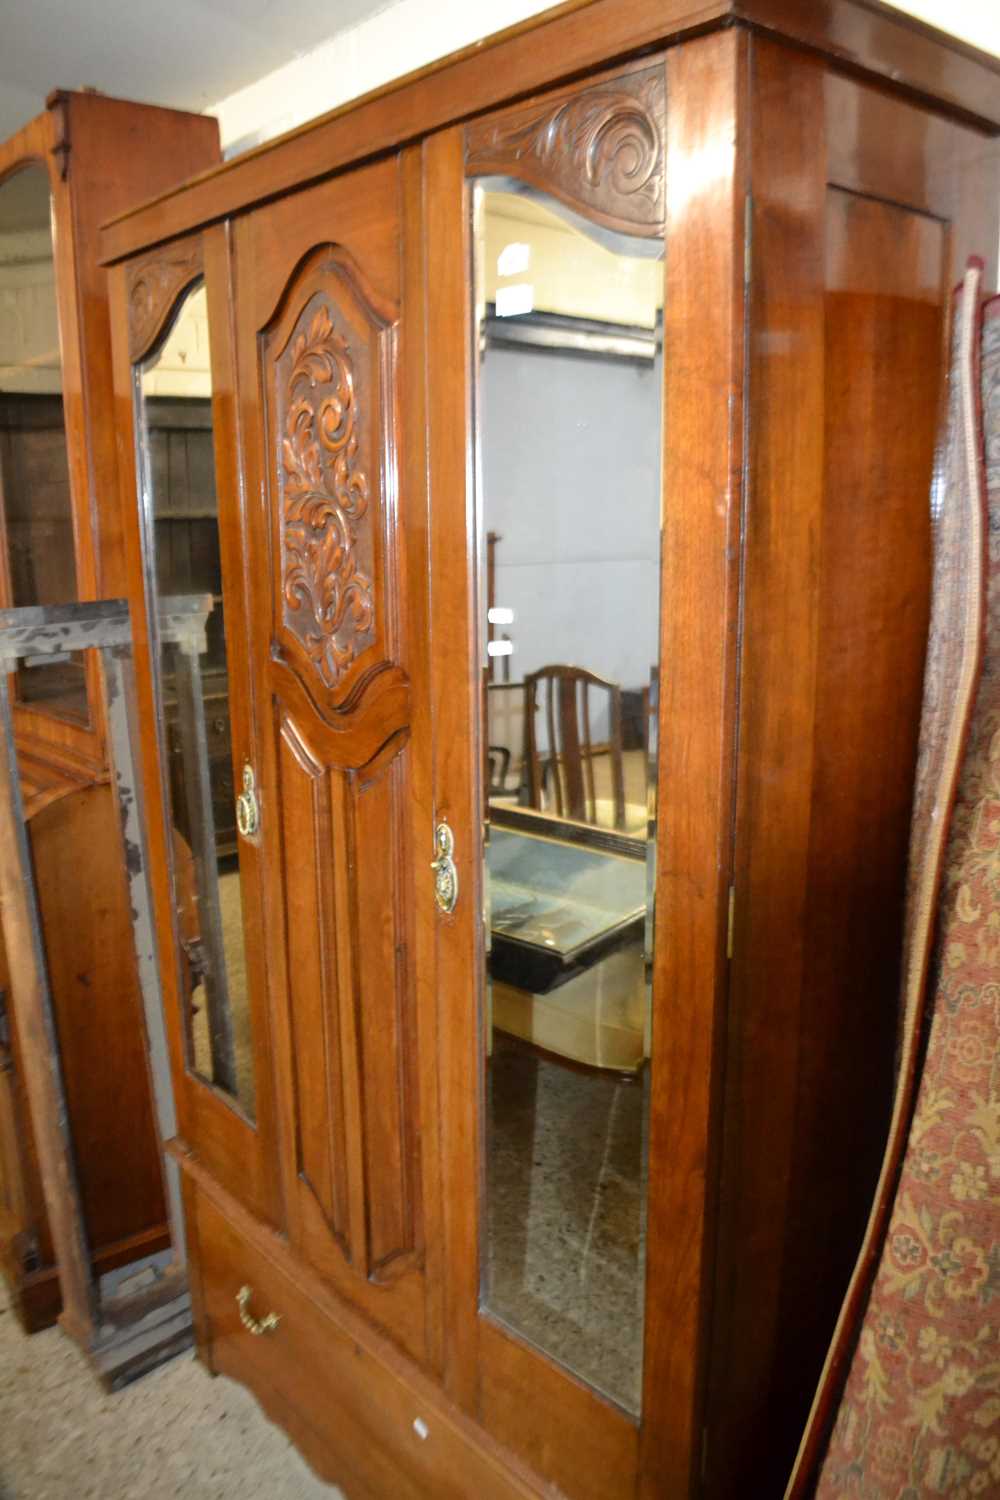 Late Victorian American mirrored door wardrobe